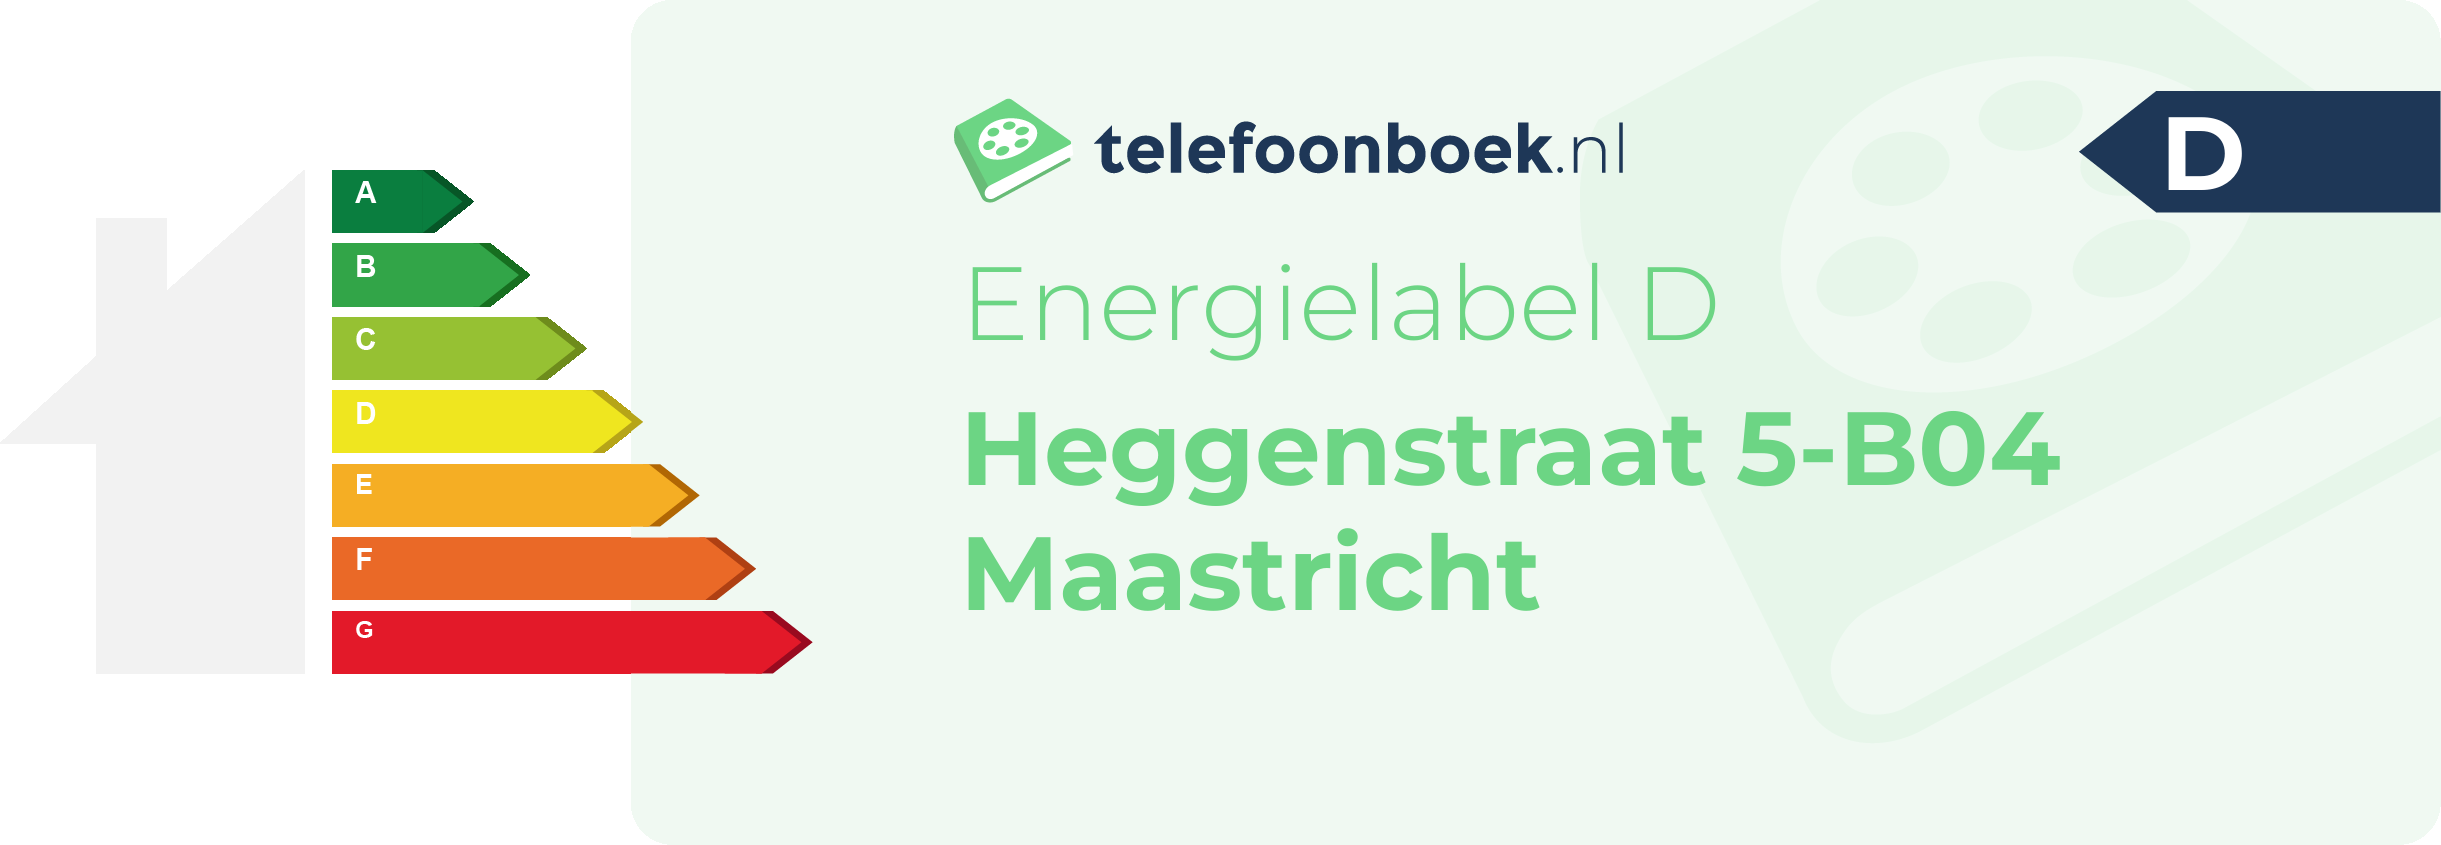 Energielabel Heggenstraat 5-B04 Maastricht